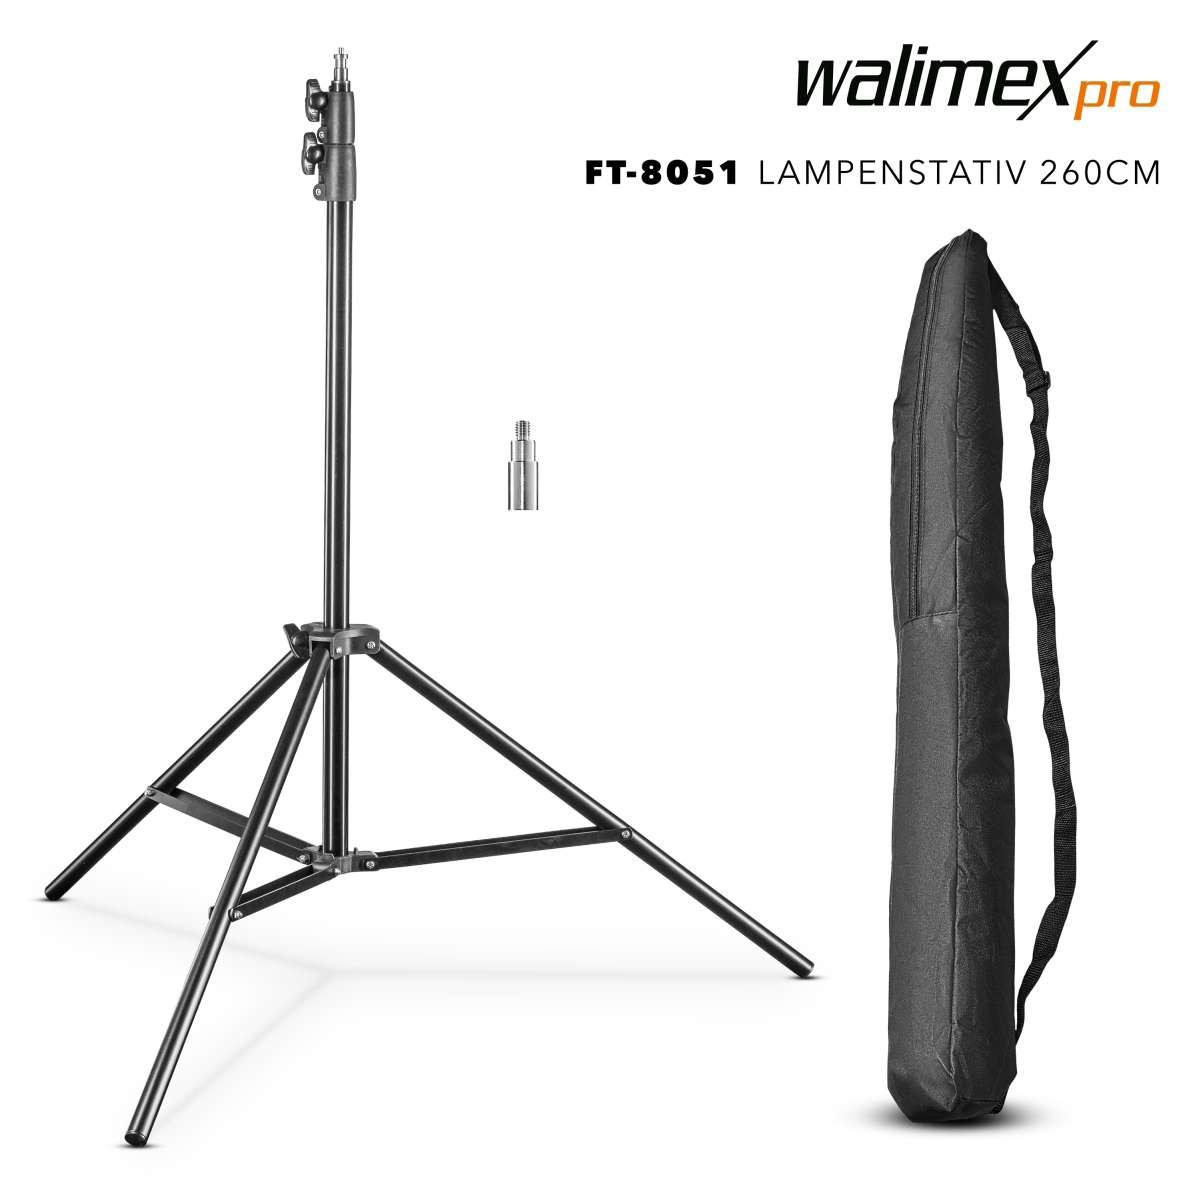 Walimex FT 8051 Lampenstativ 260 cm